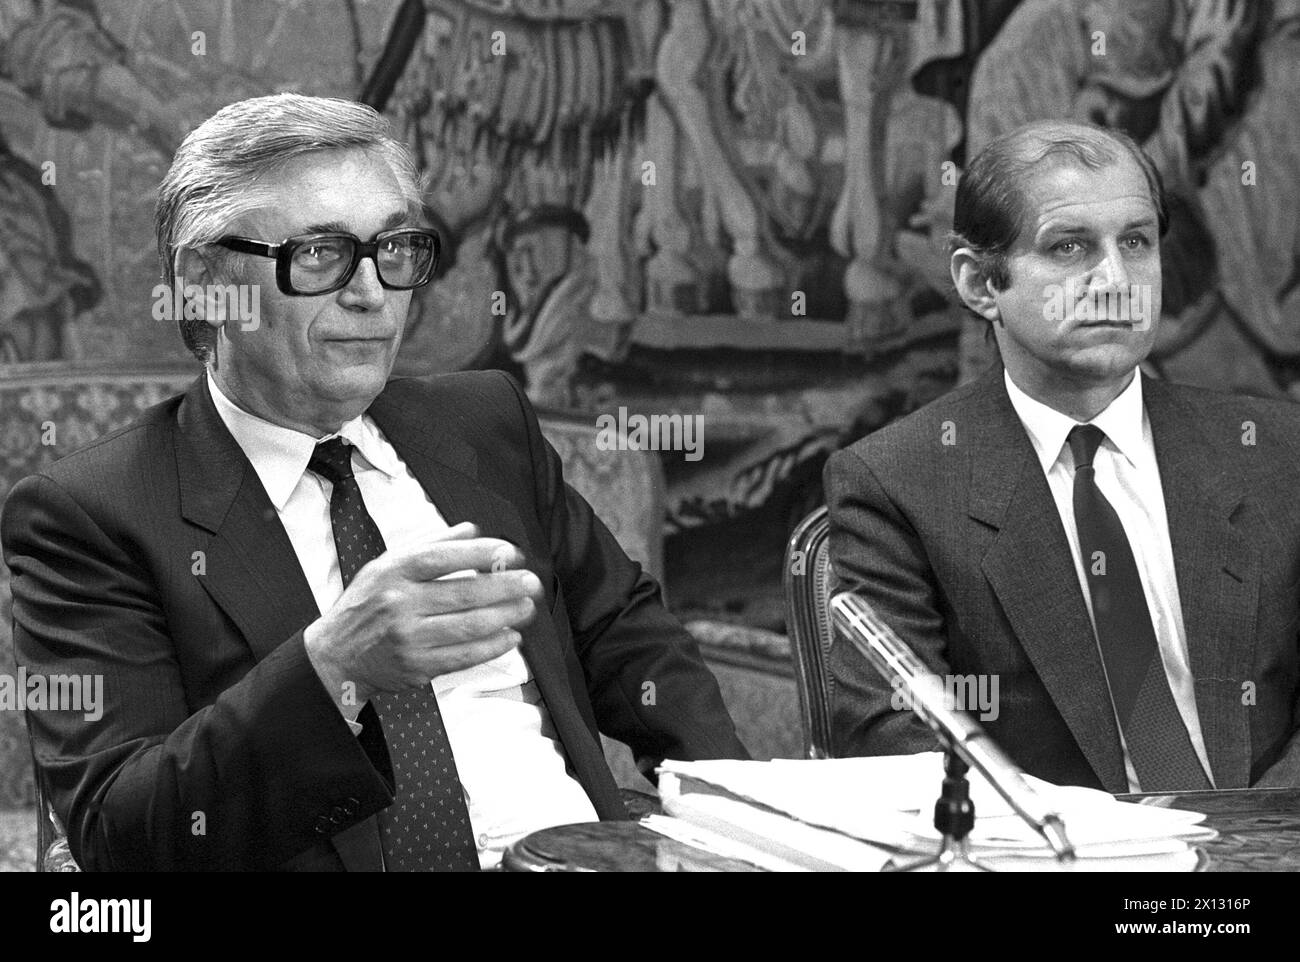 Vienna, il 13 maggio 1987: Jiri Beranek (l.), ispettore generale delle centrali nucleari della CSSR e sede Marek (r.), ambasciatore della CSSR in Austria, tengono una conferenza stampa sulla sicurezza delle centrali nucleari della CSSR. - 19870513 PD0002 - Rechteinfo: Diritti gestiti (RM) Foto Stock